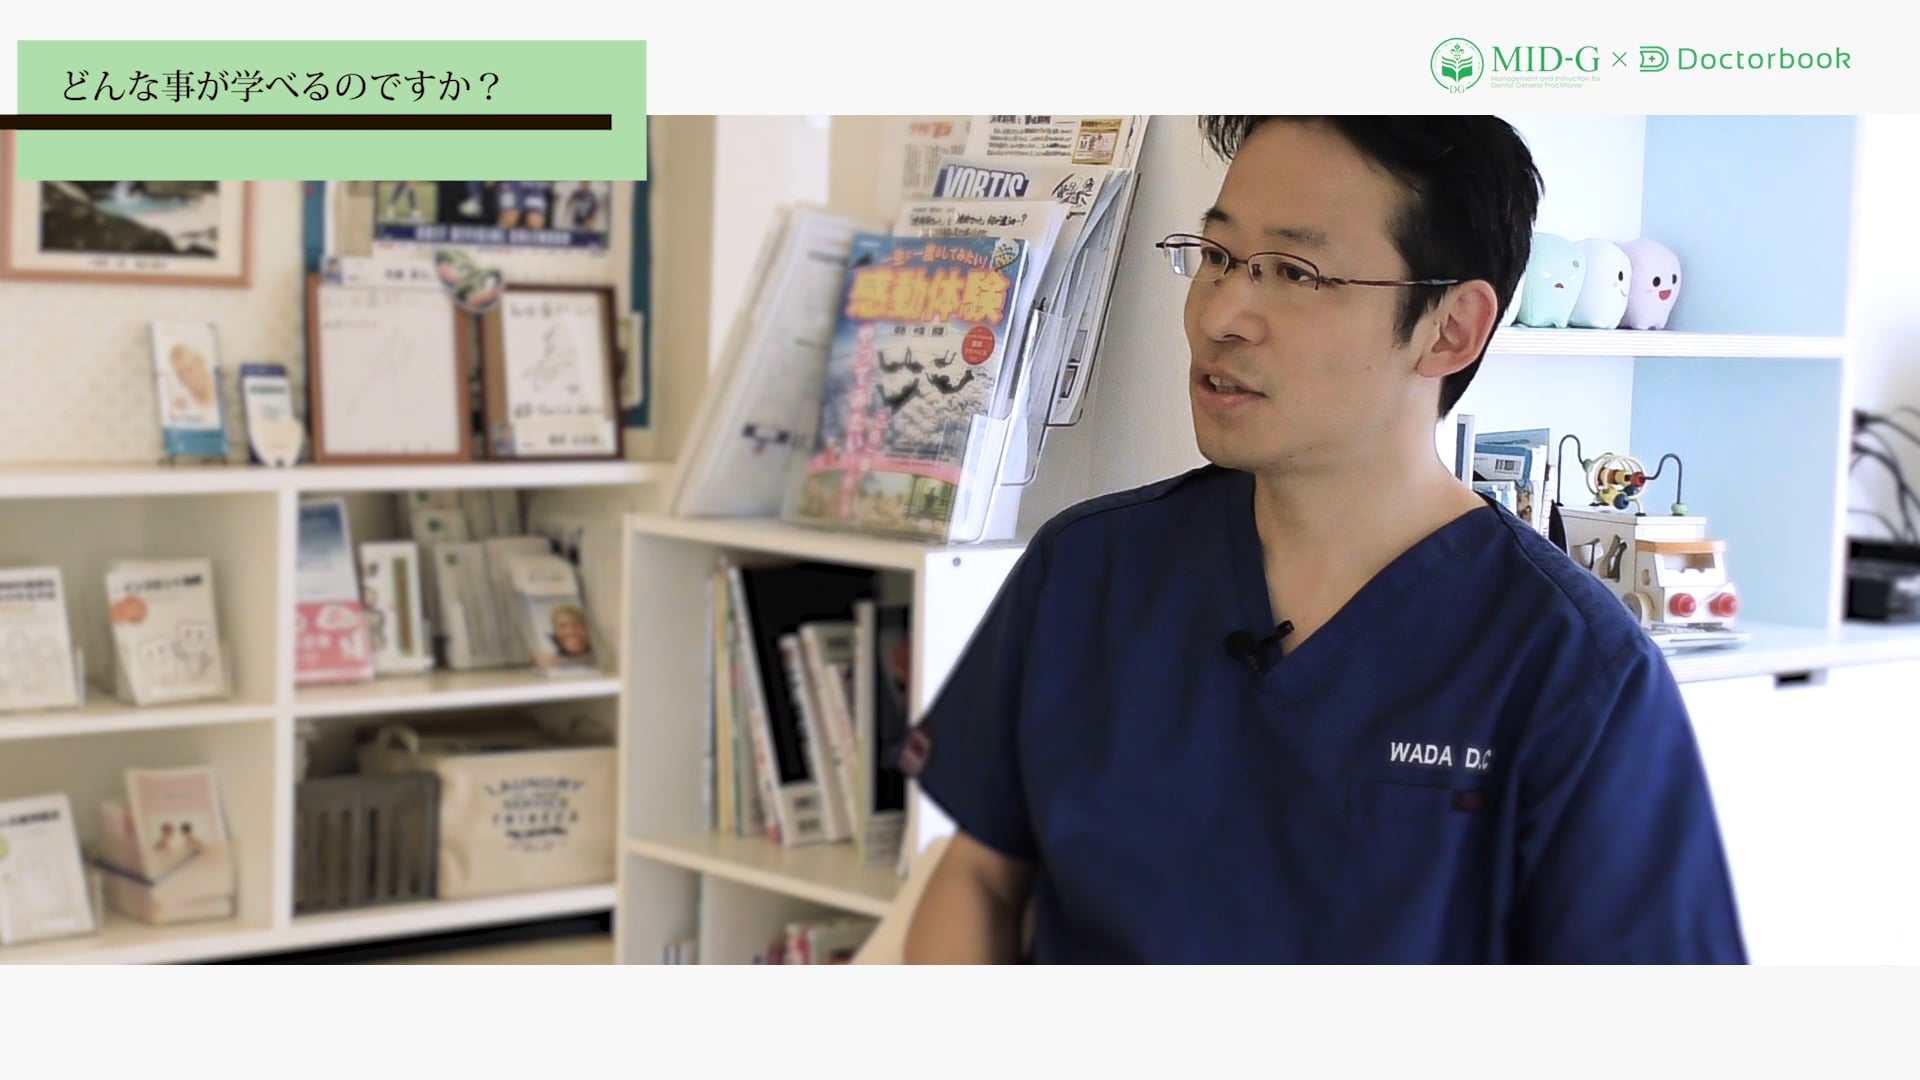 【MID-G x Doctorbook】インタビュー：和田匡史先生「GPアカデミーについて」